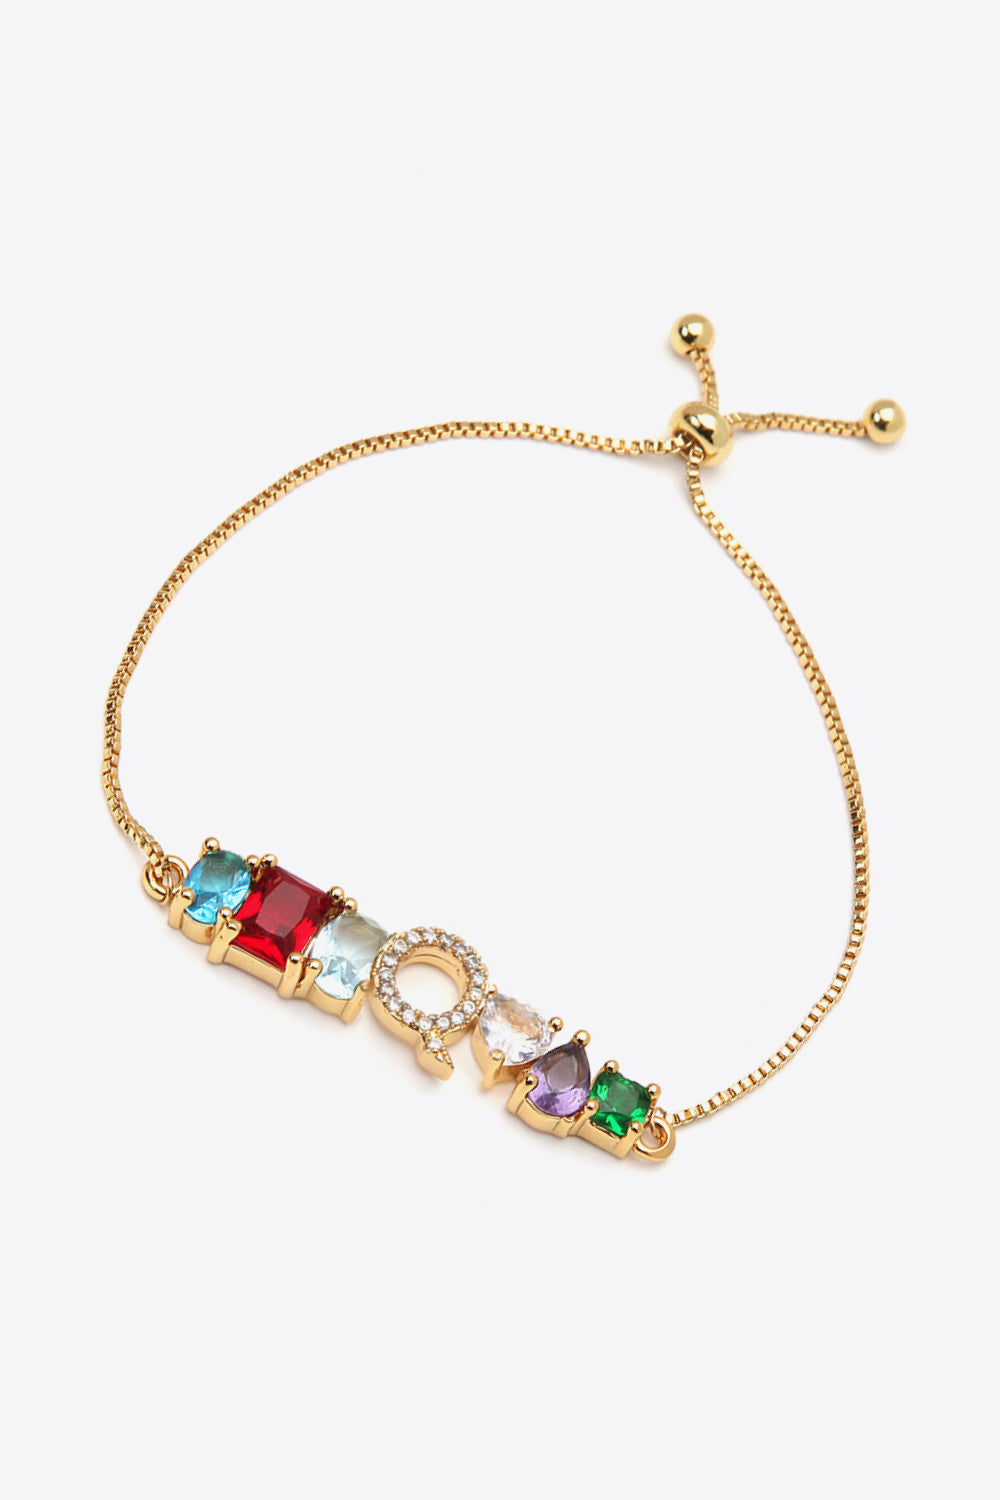 K to T Zircon Bracelet - Women’s Jewelry - Bracelets - 20 - 2024